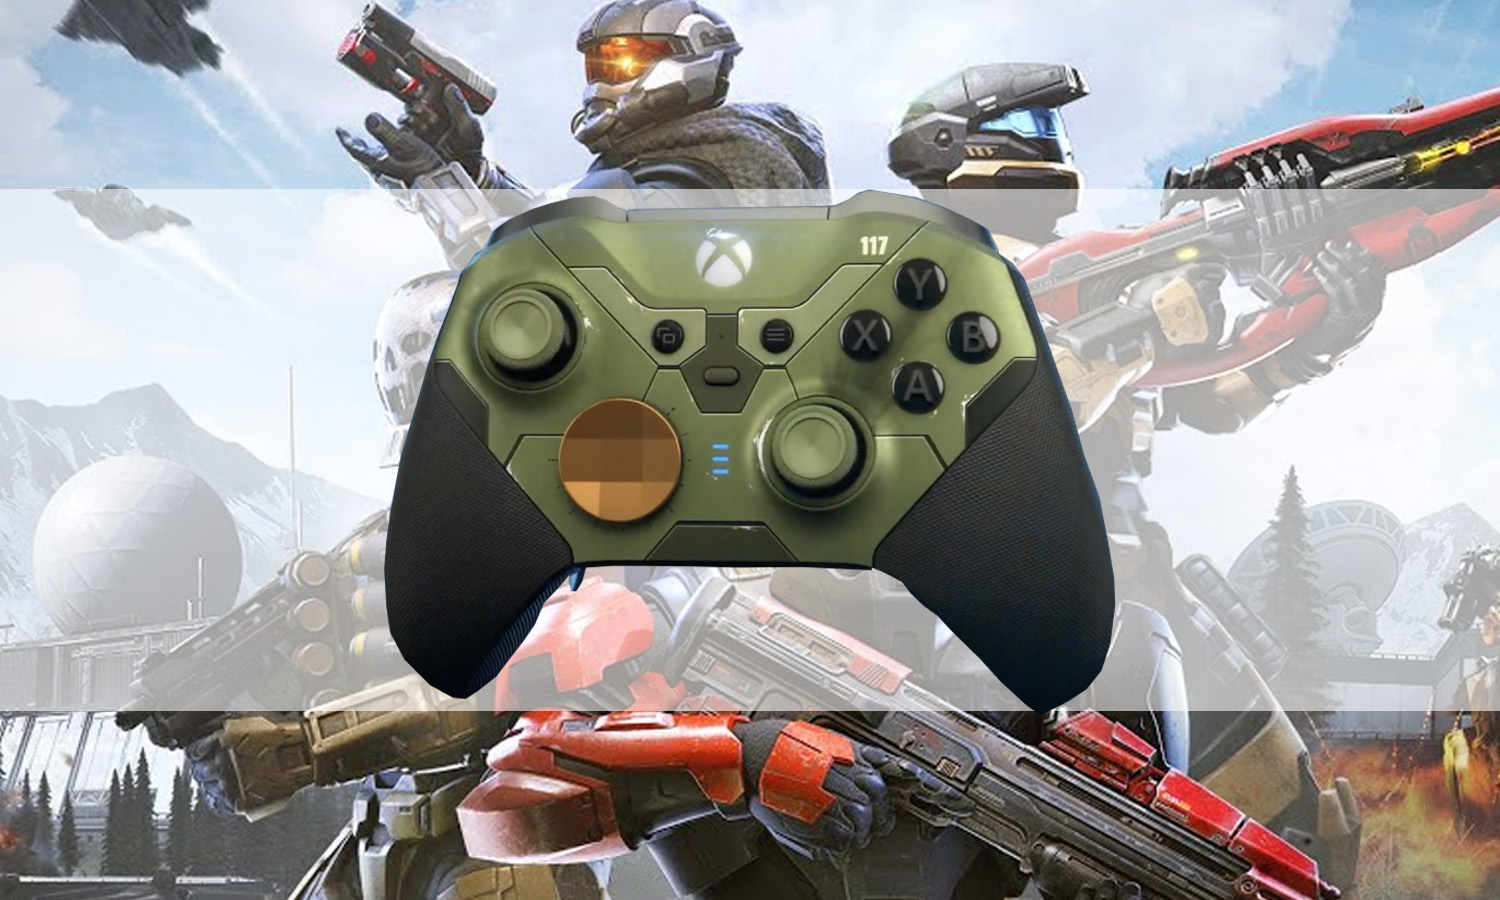 Xbox Elite Wireless Manette Series 2 - Halo Infinite Edition Limitée :  : Jeux vidéo